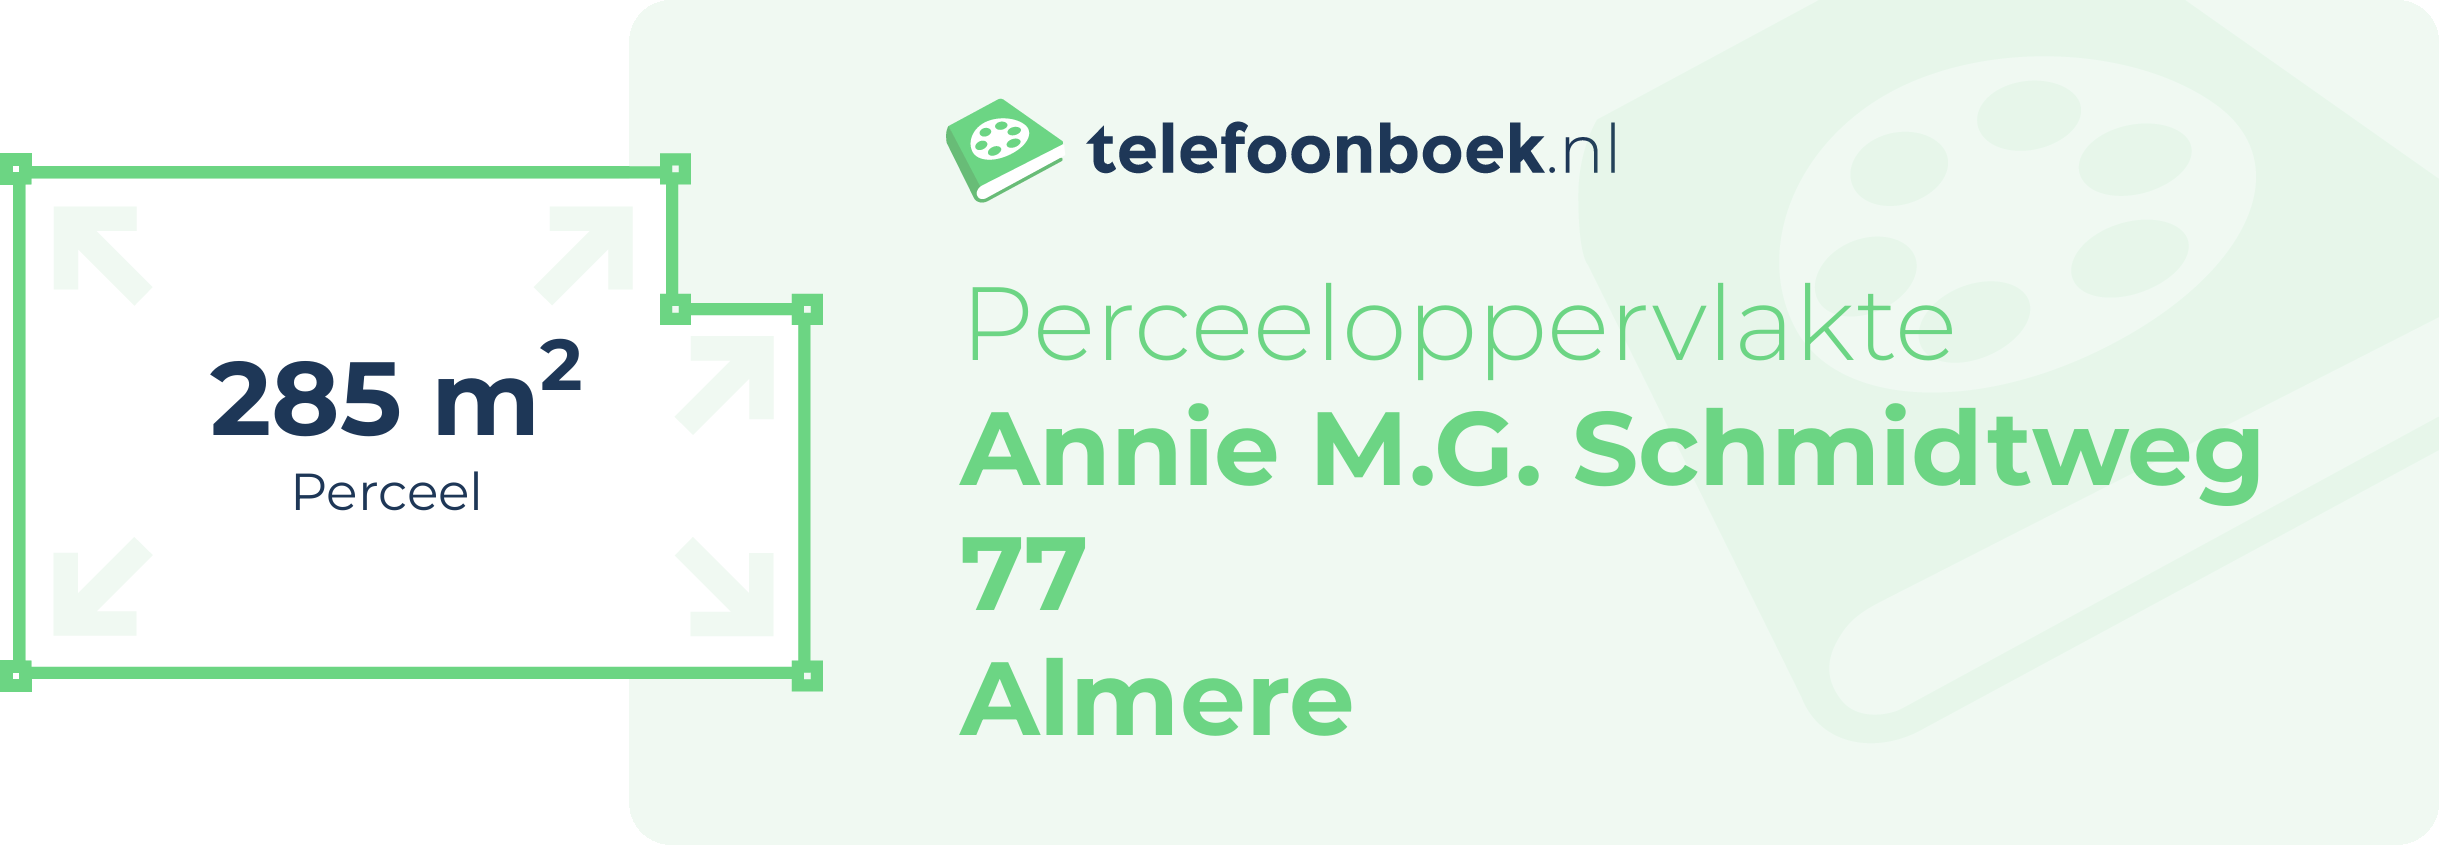 Perceeloppervlakte Annie M.G. Schmidtweg 77 Almere